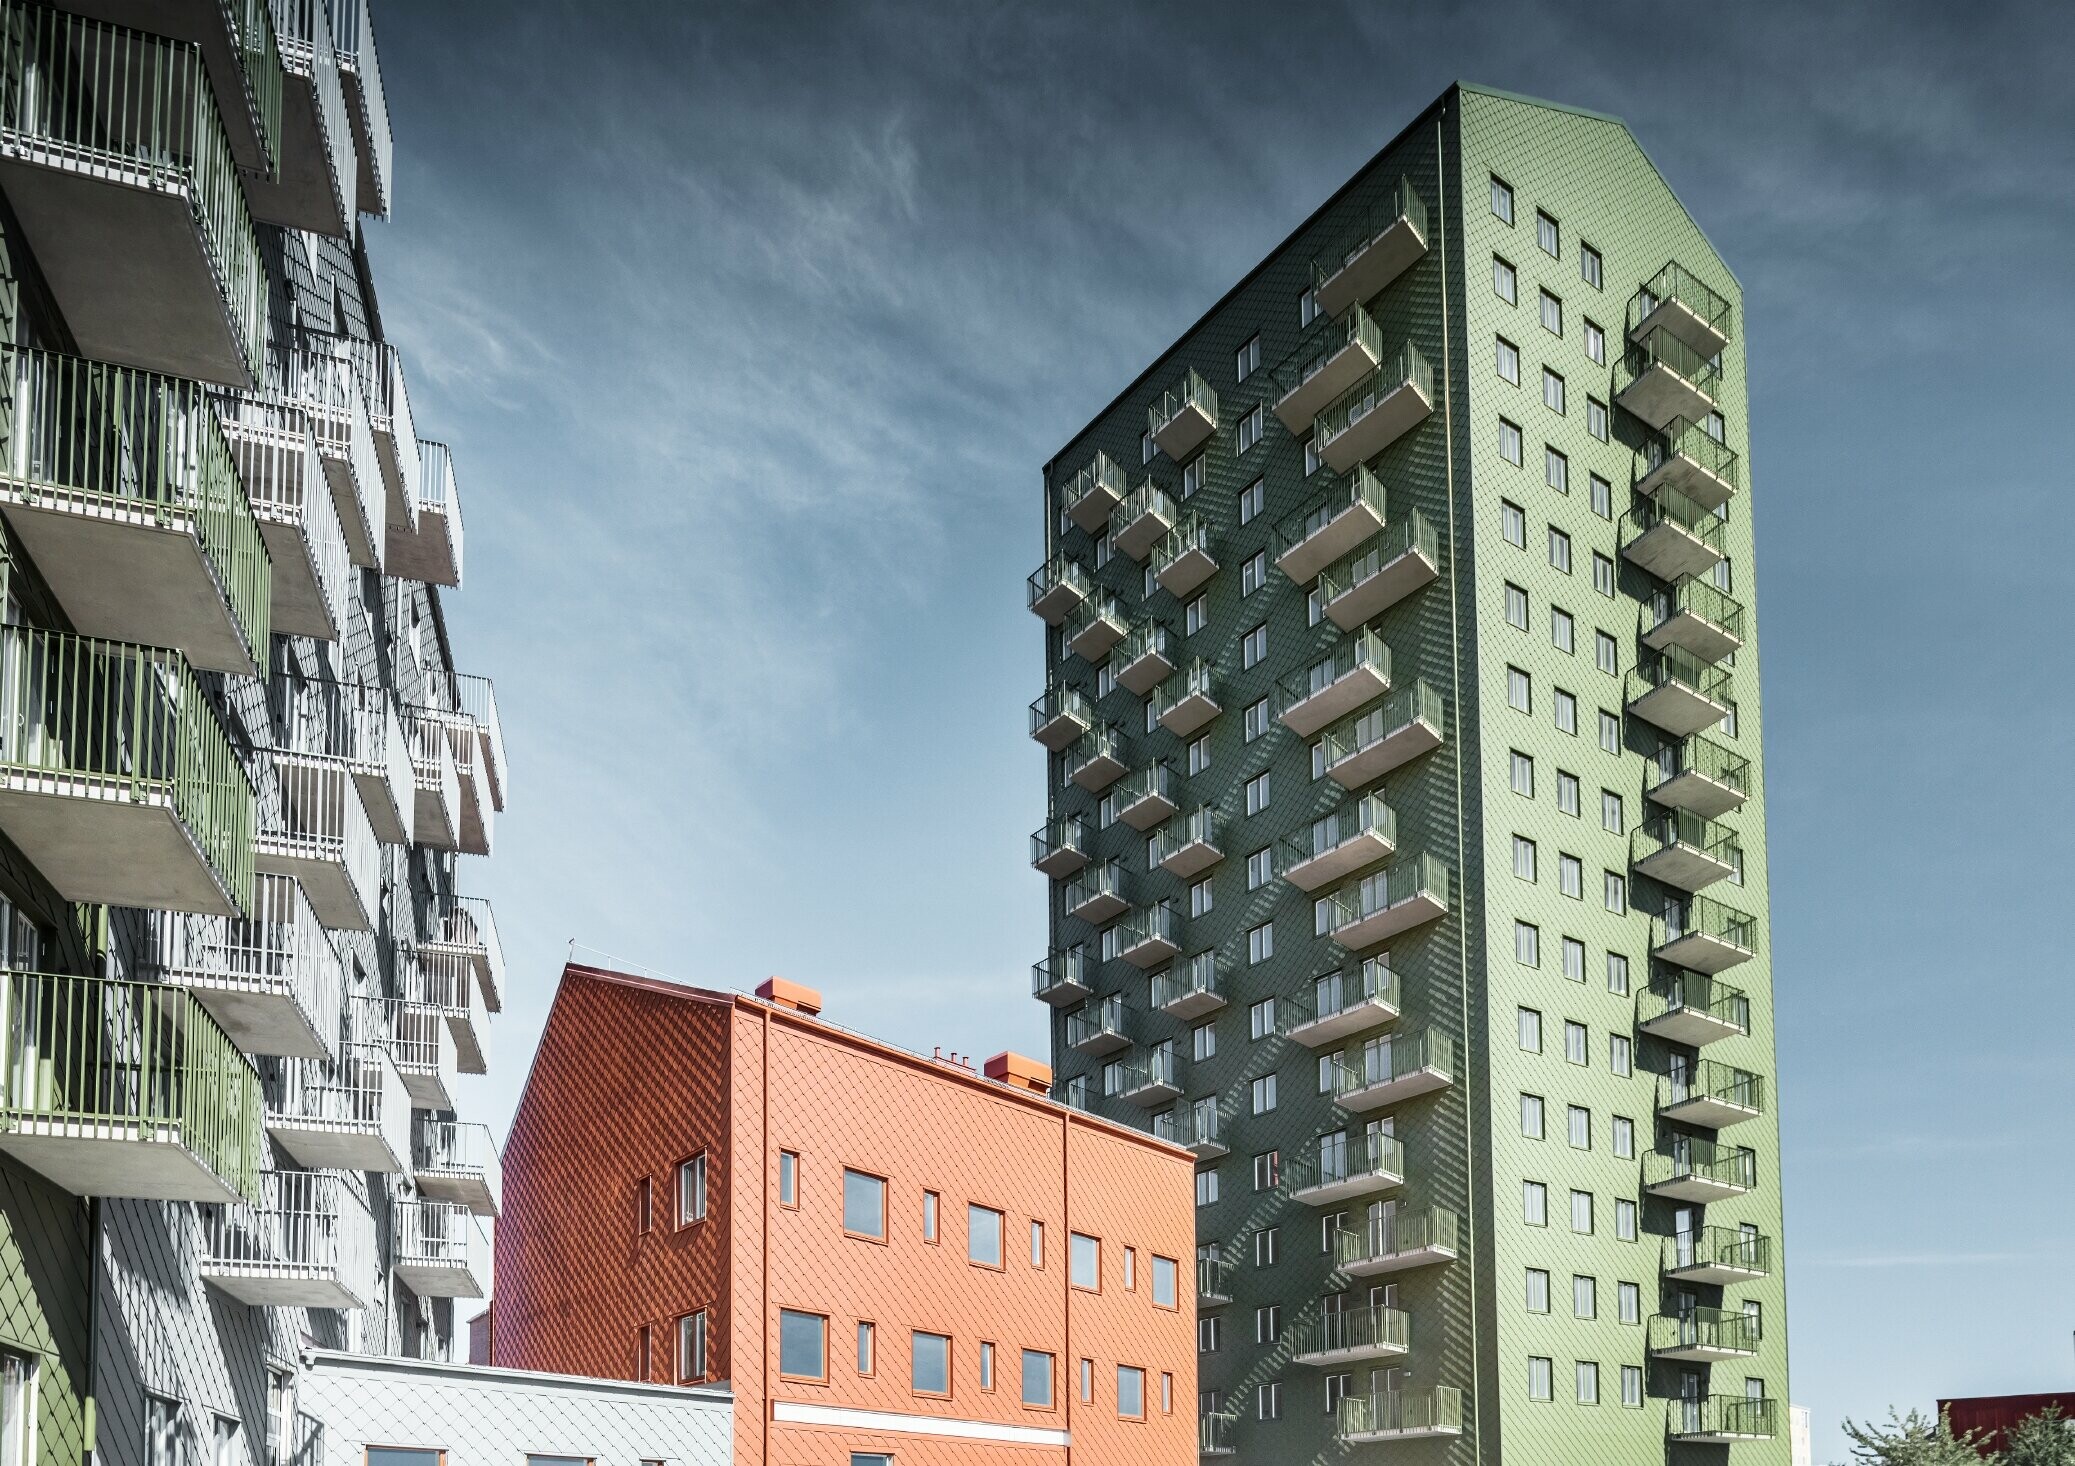 Różne bloki mieszkalne z poszyciem elewacji z rombu fasadowego PREFA 29 × 29 w kolorach oliwkowym, ceglastym i jasnoszarym, Göteborg, Szwecja.